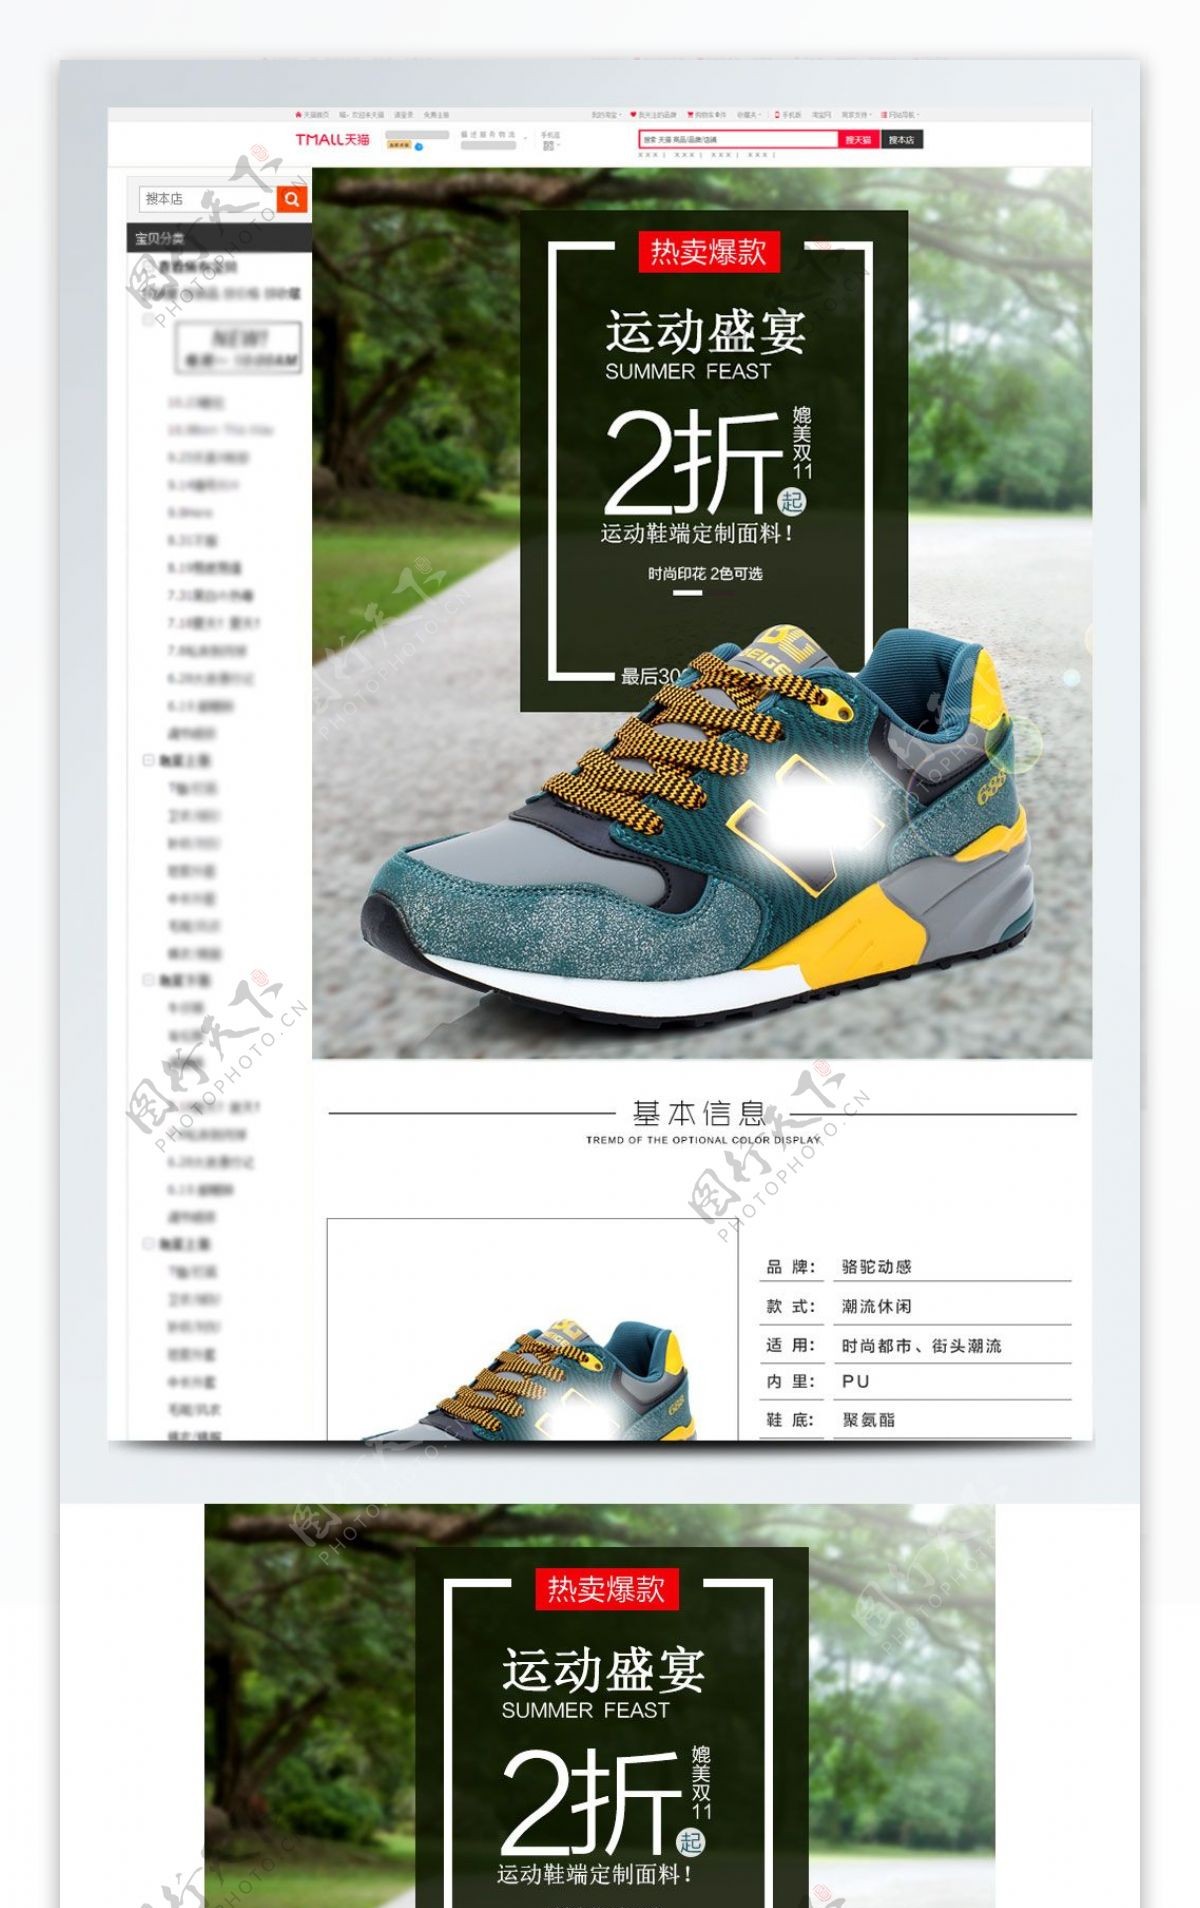 鞋子运动鞋休闲鞋详情页模板psd源文件